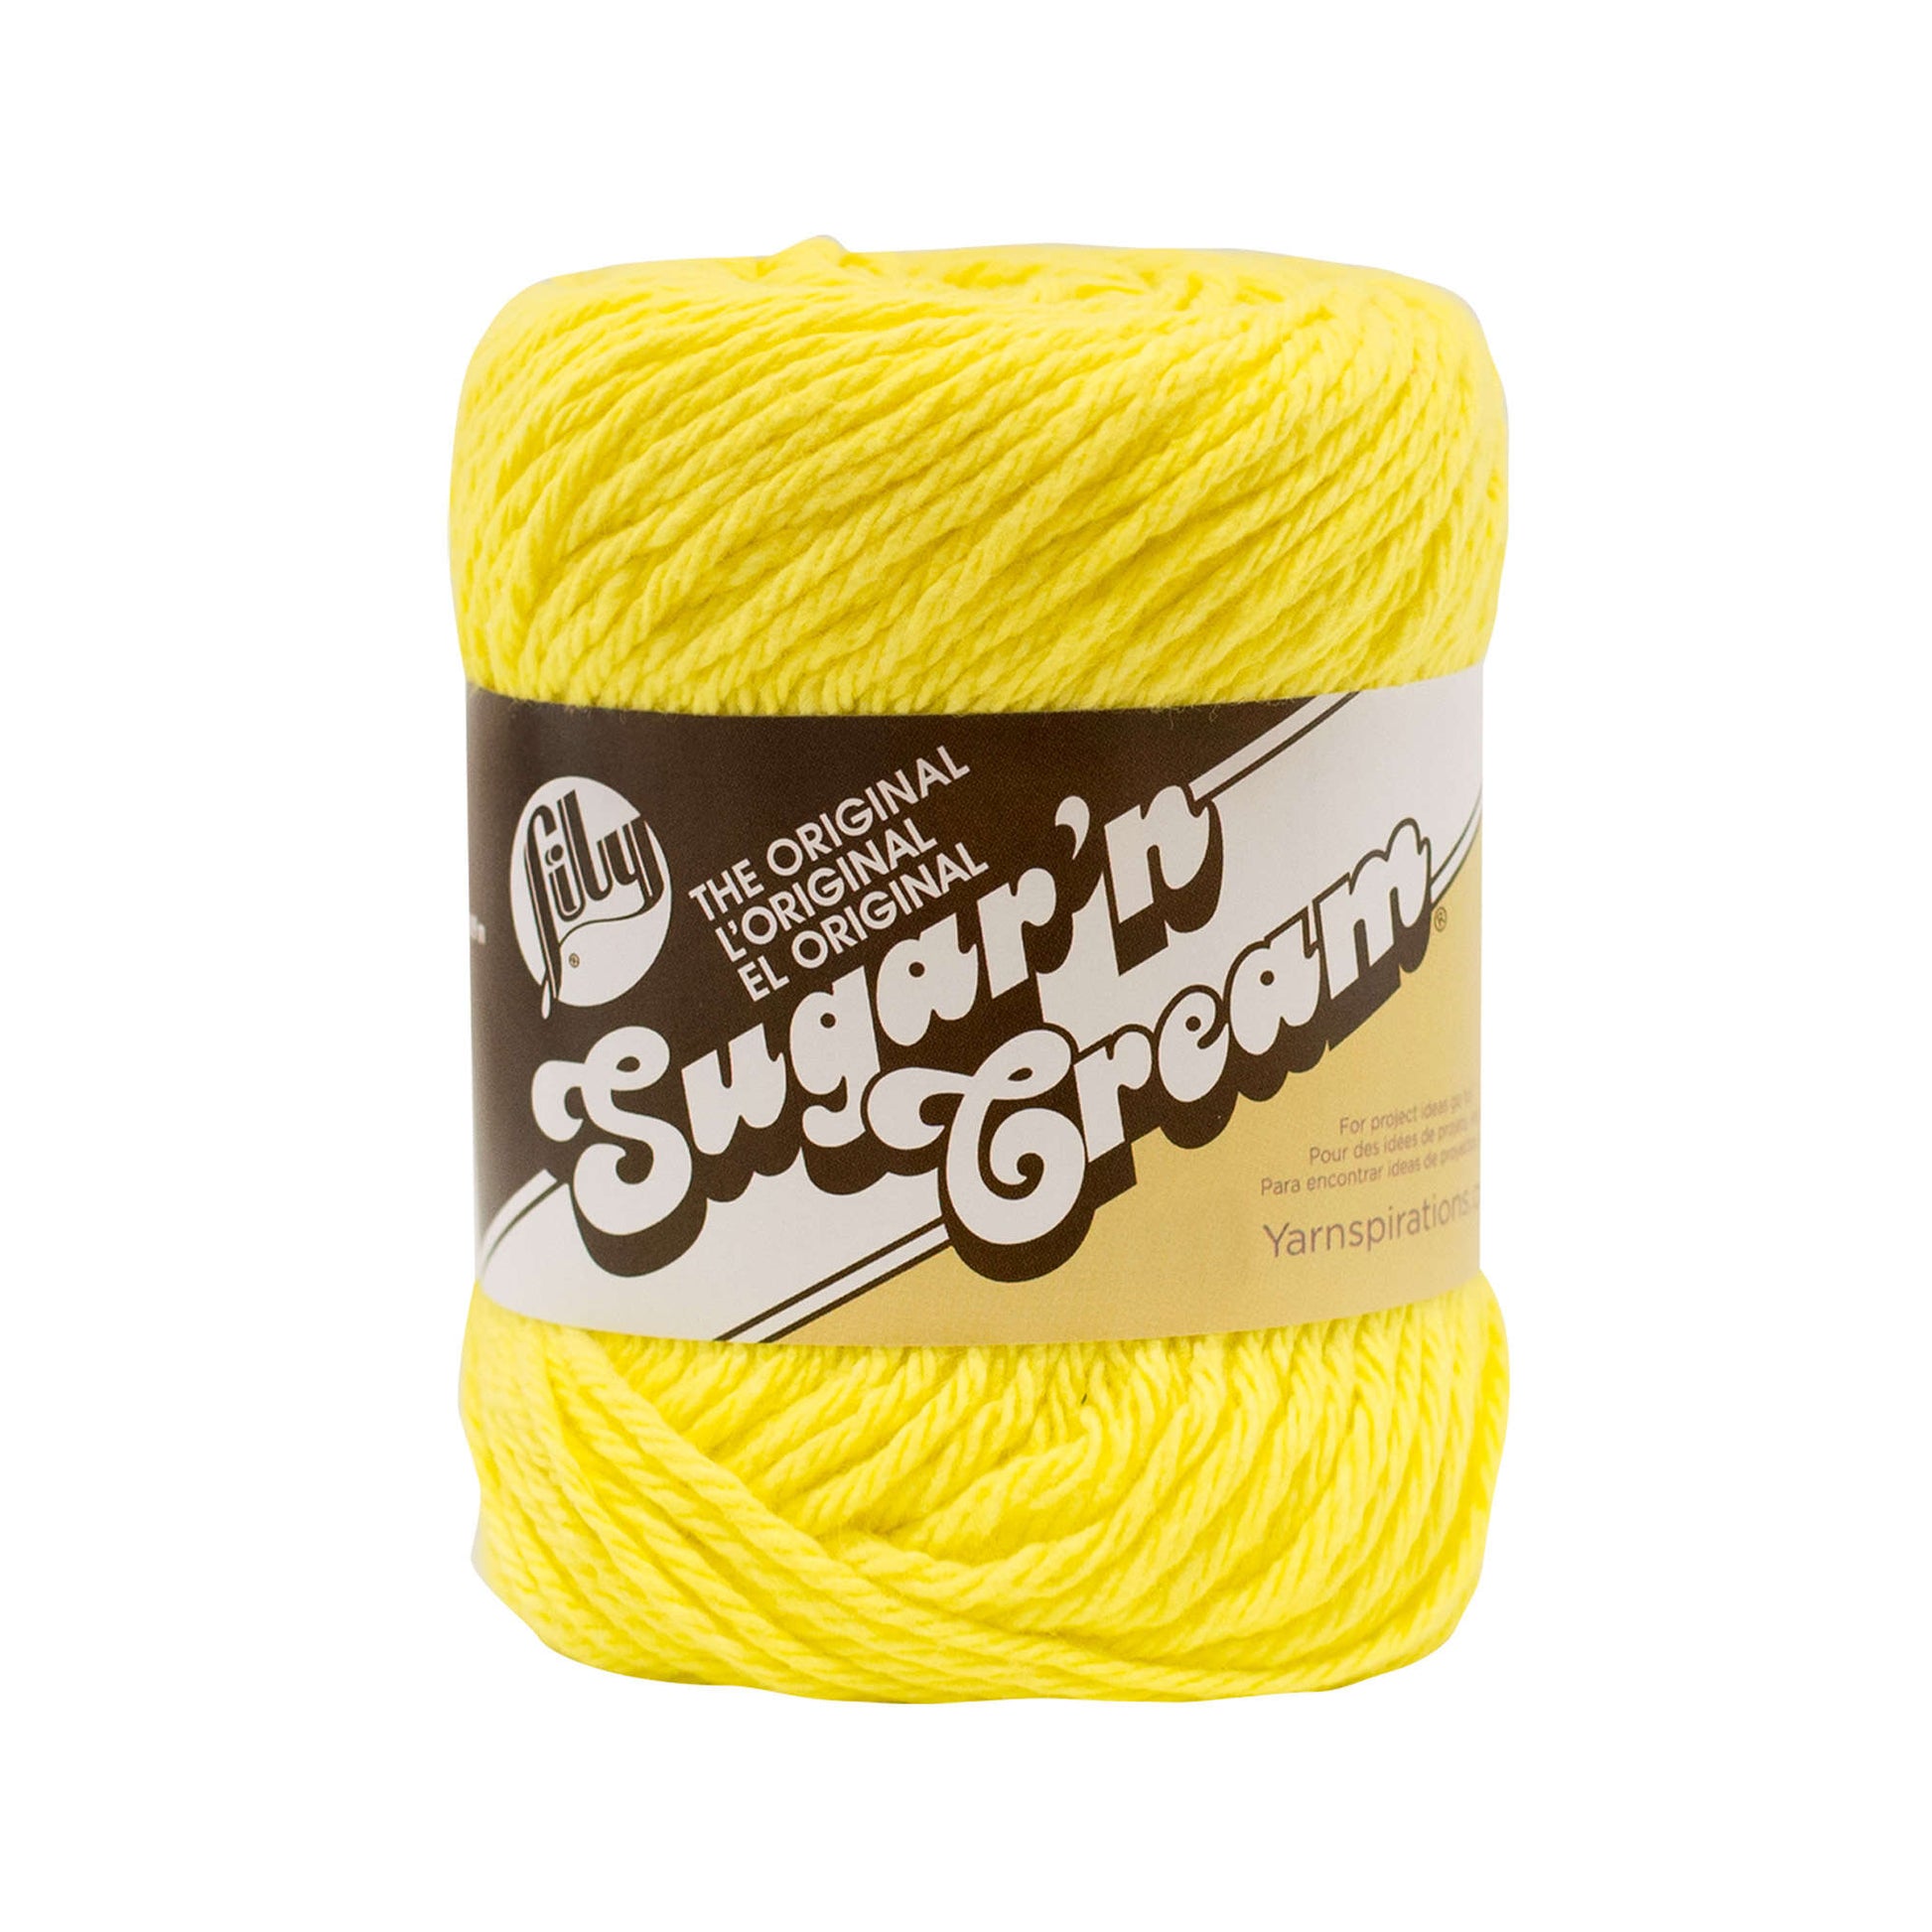 Lily Sugar 'n Cream Yarn Solids (Seabreeze)